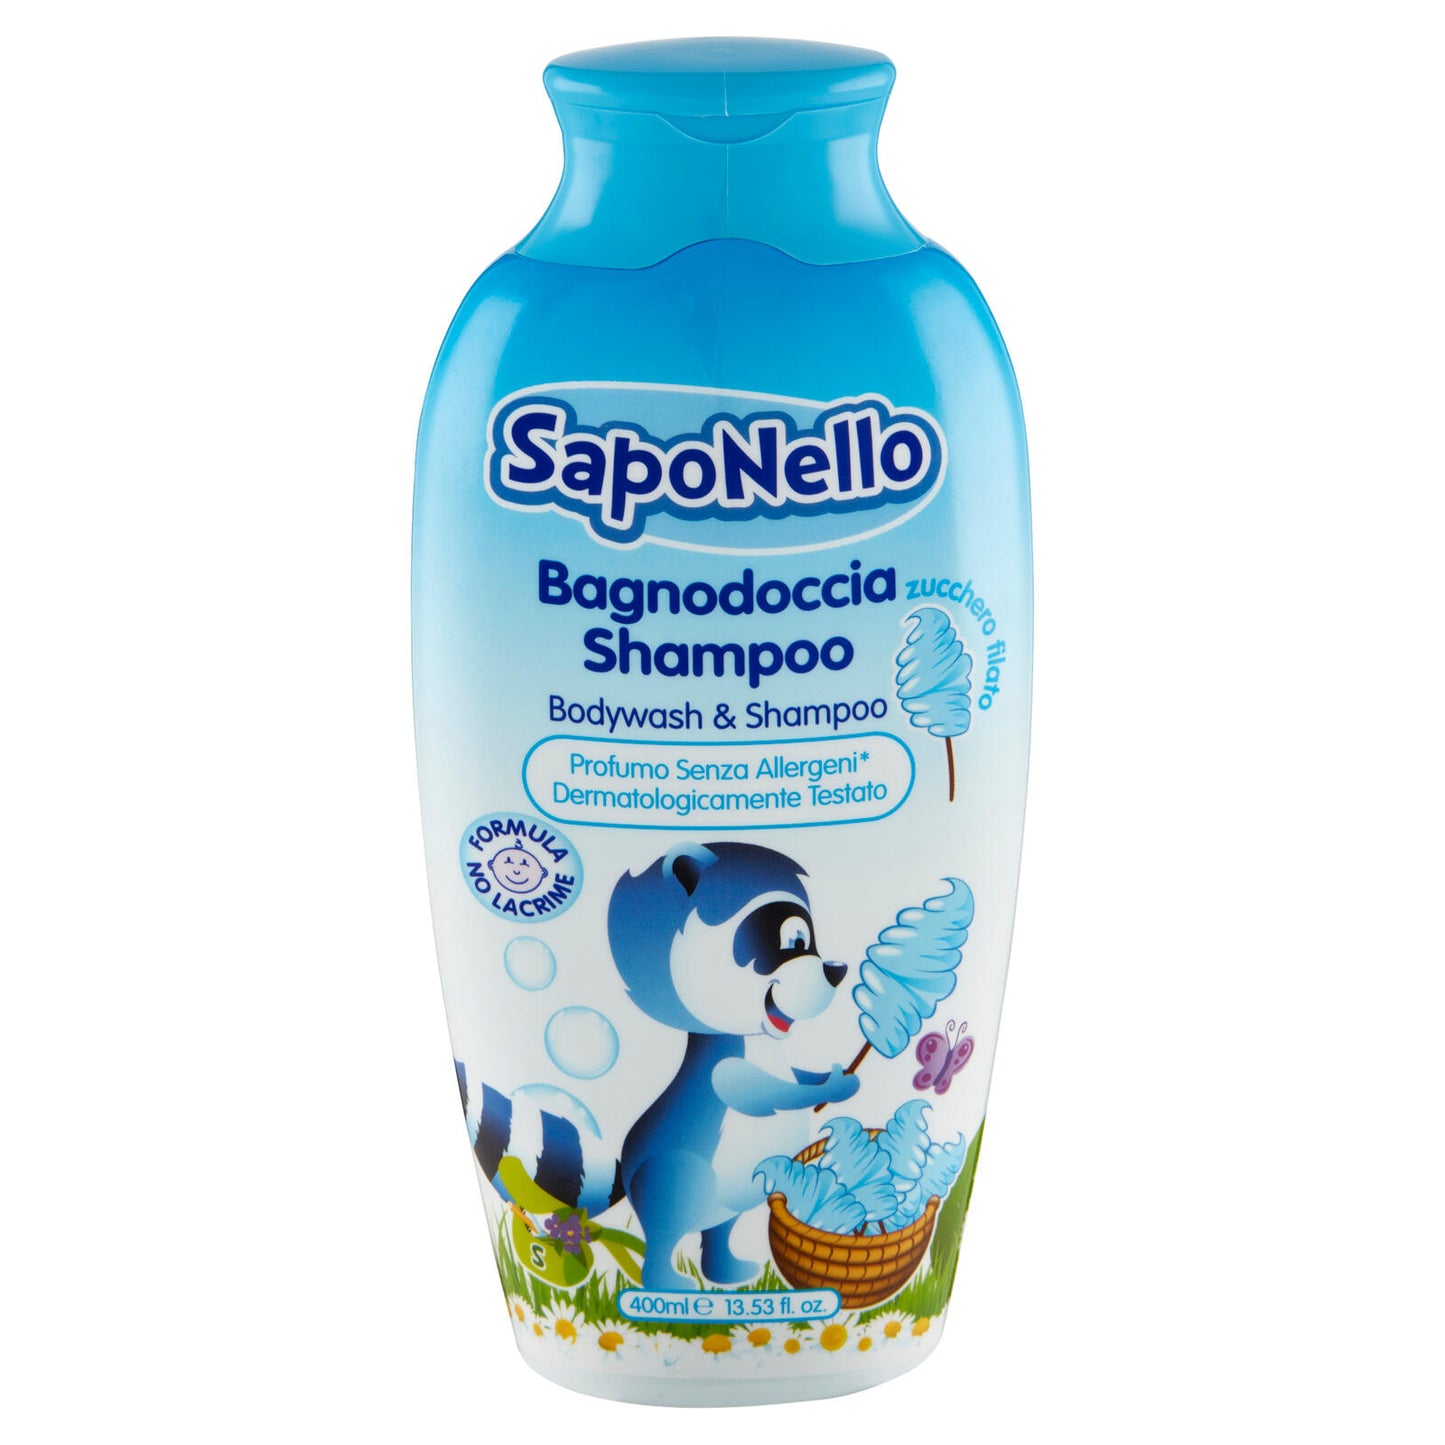 SapoNello Bagnodoccia Shampoo zucchero filato 400 ml